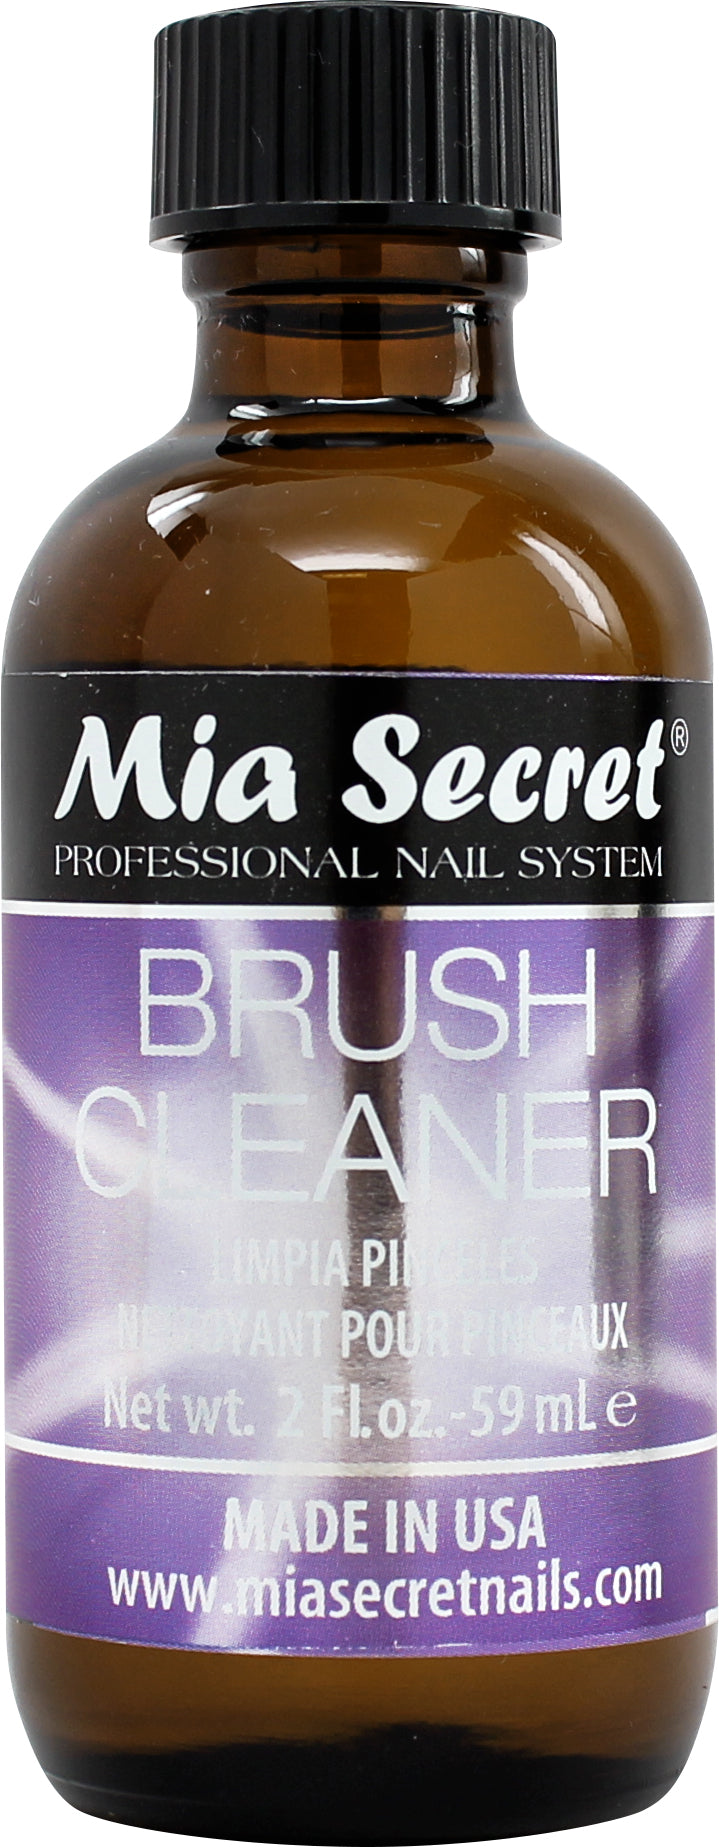 MIA SECRET - BRUSH CLEANER